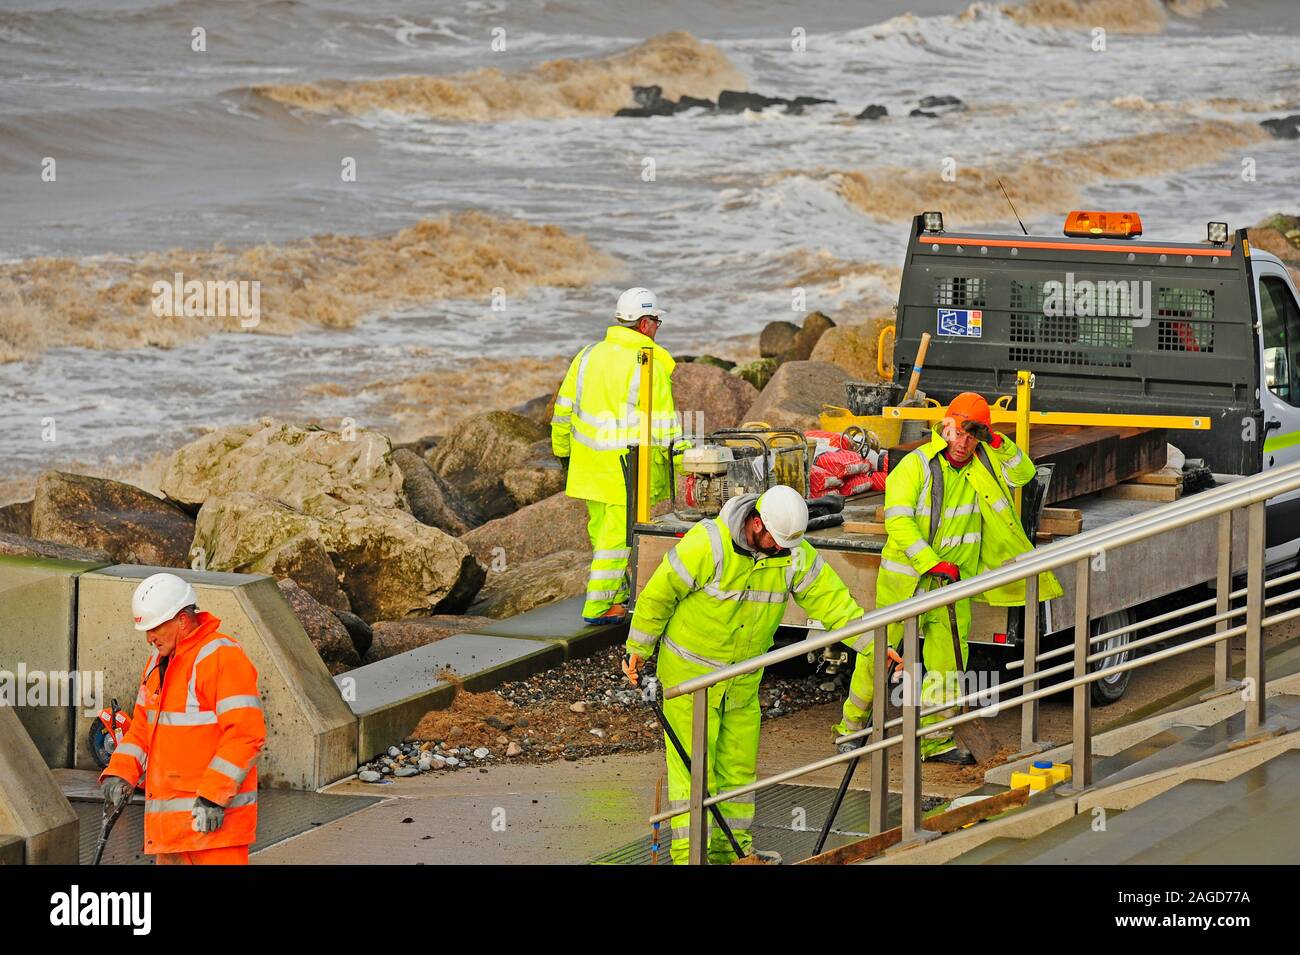 Les équipements de protection des travailleurs dans le nettoyage après une grave tempête de mer à Rossall,5000,UK Banque D'Images